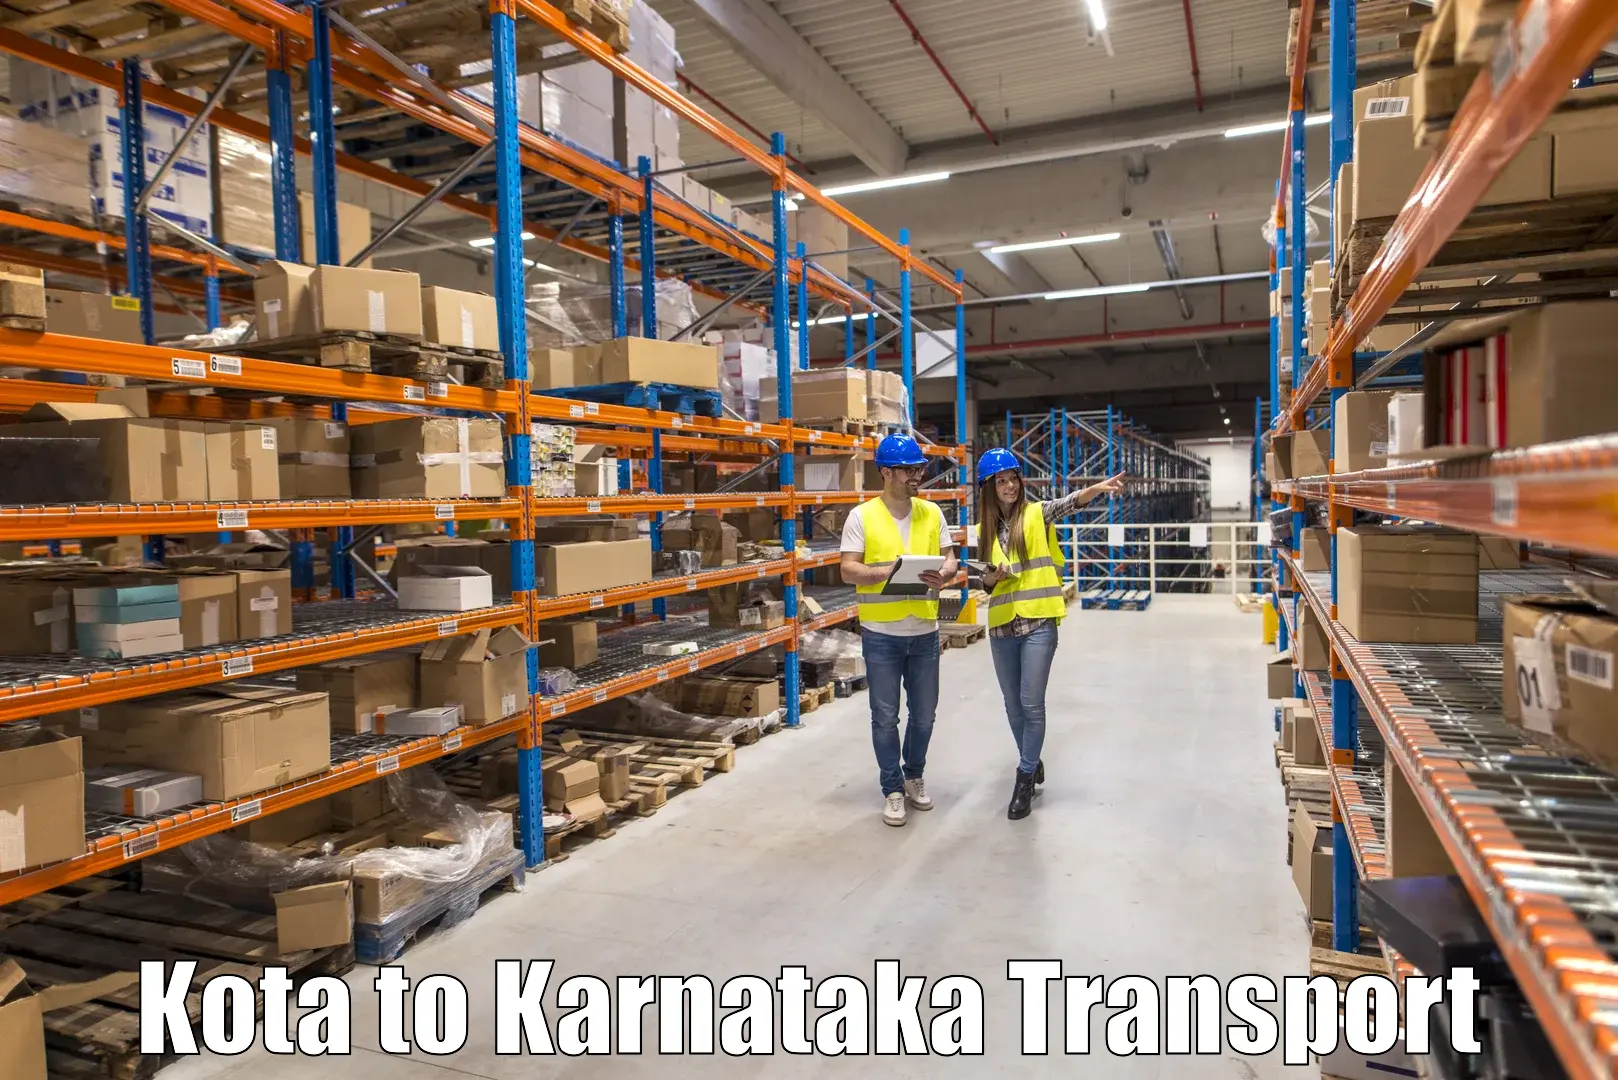 Bike shipping service Kota to Karnataka